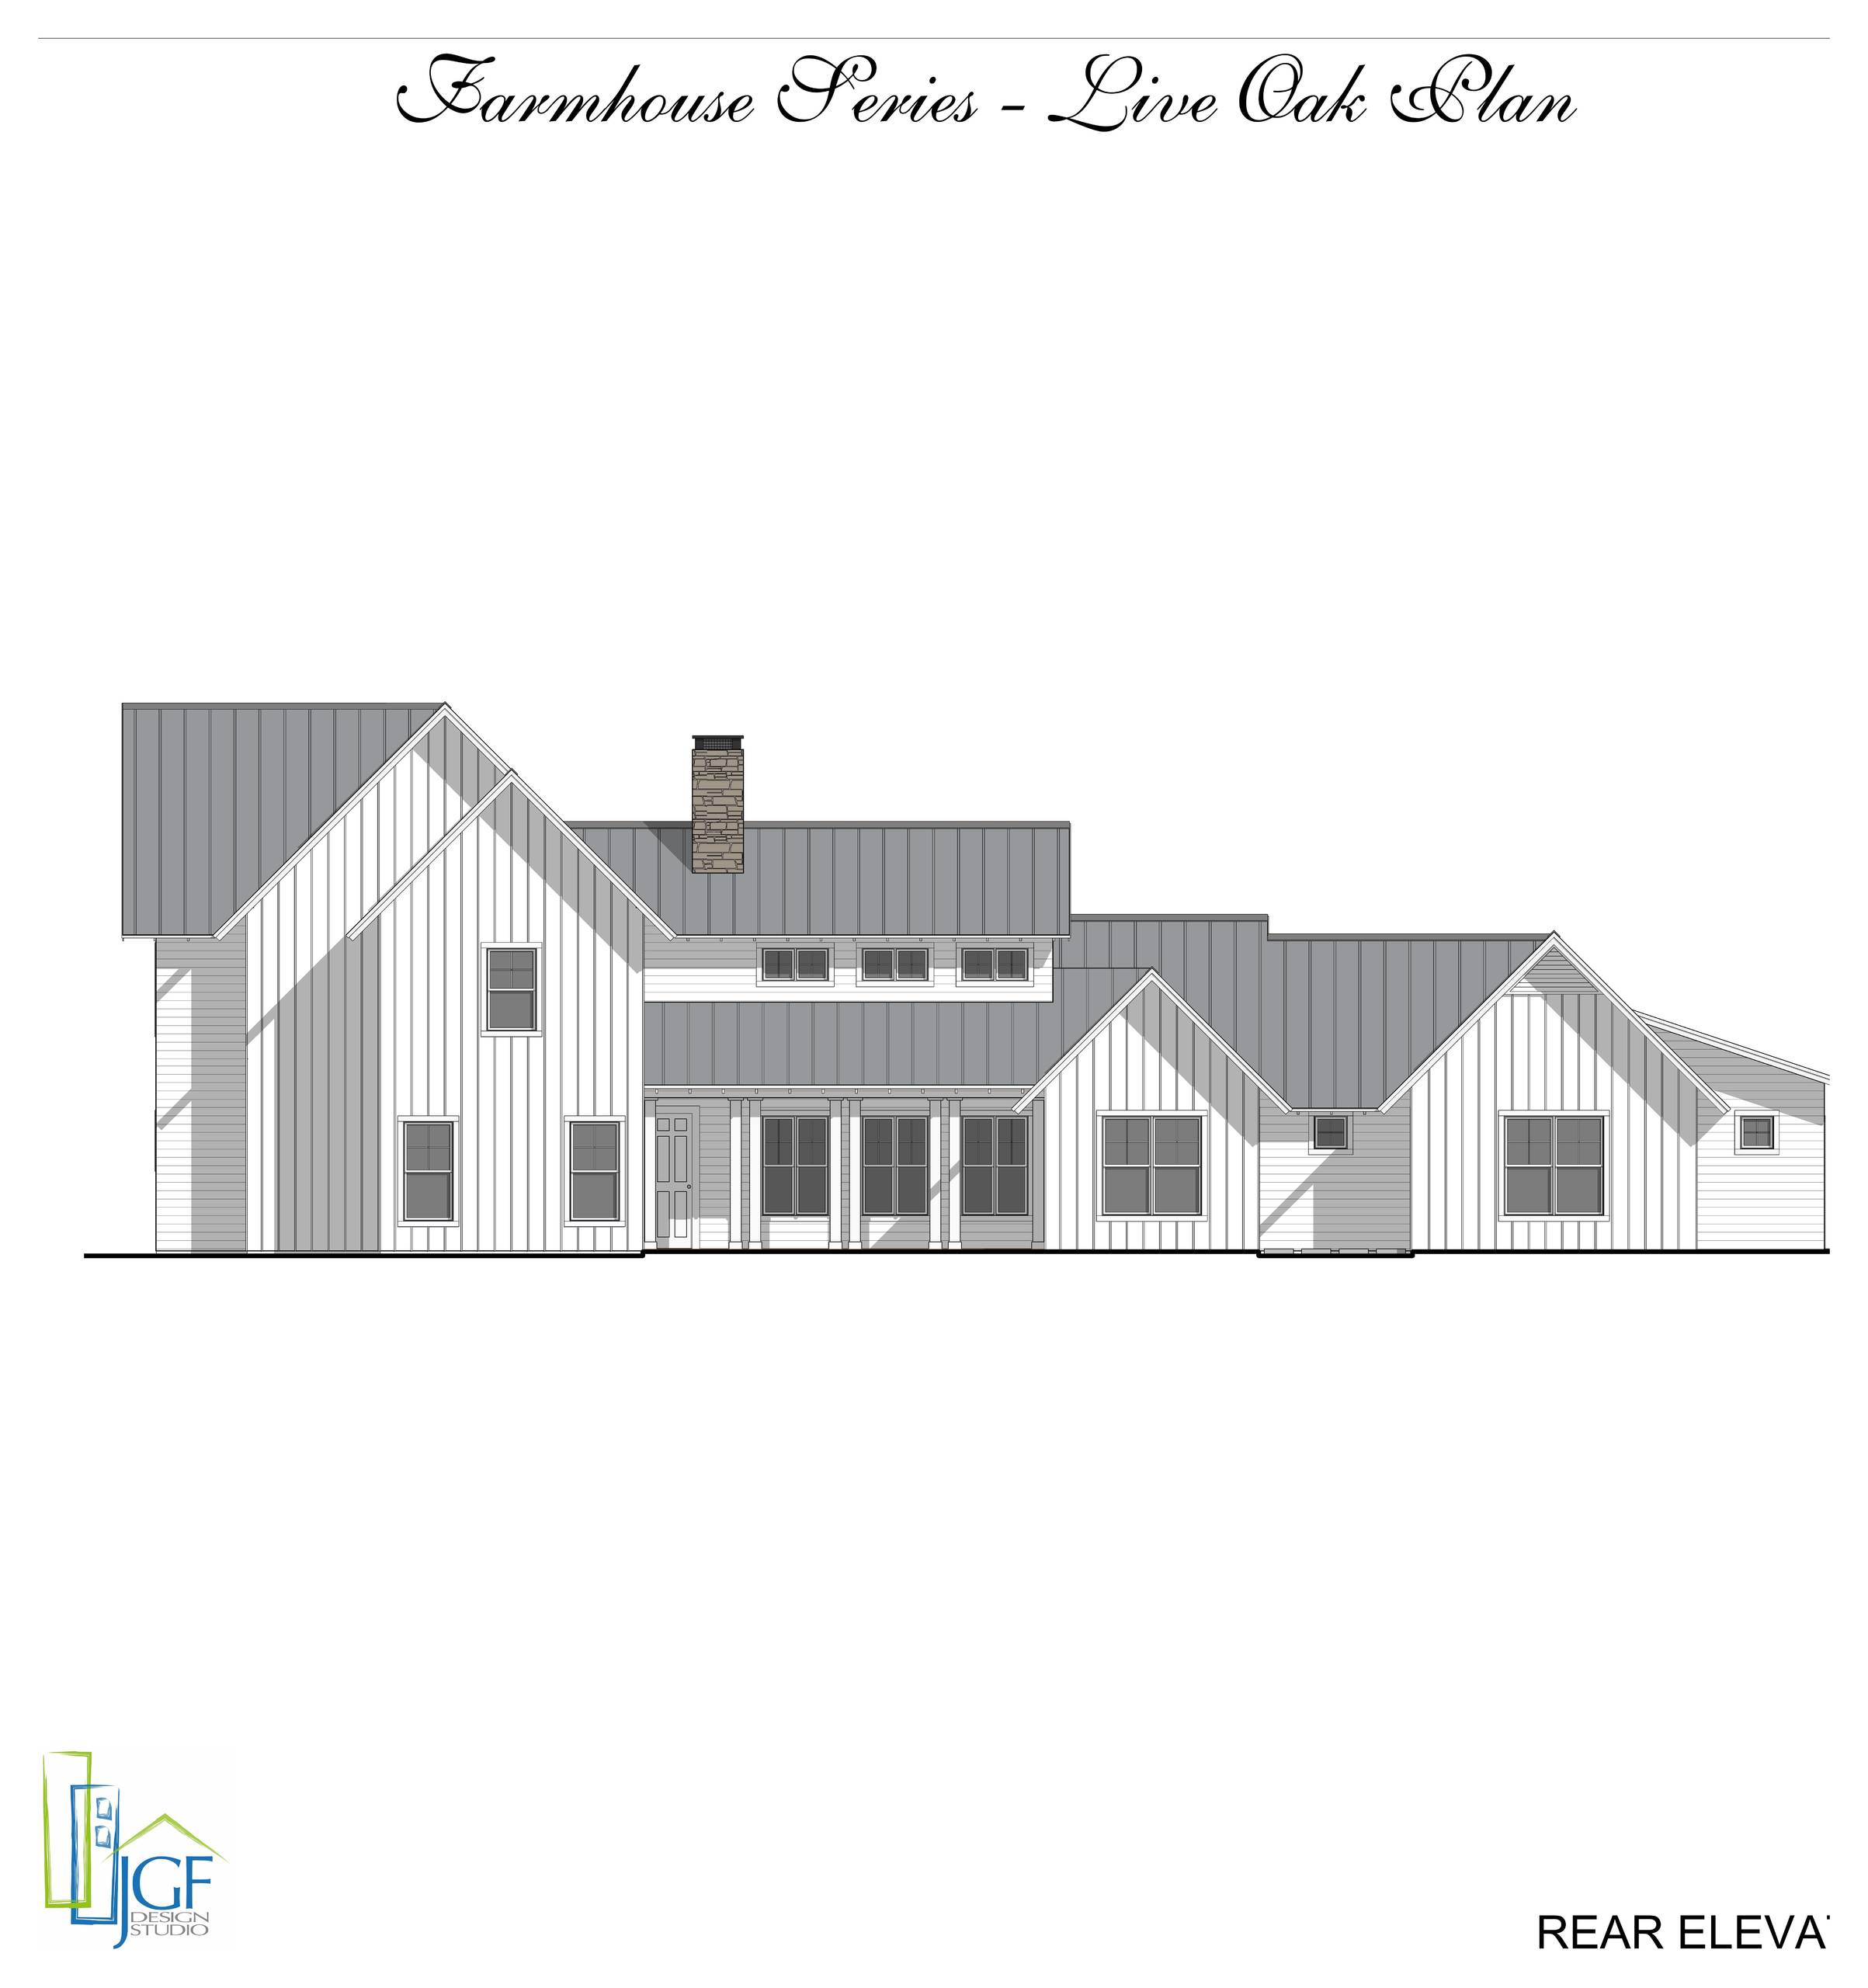 Modern Farmhouse - Live Oak Plan